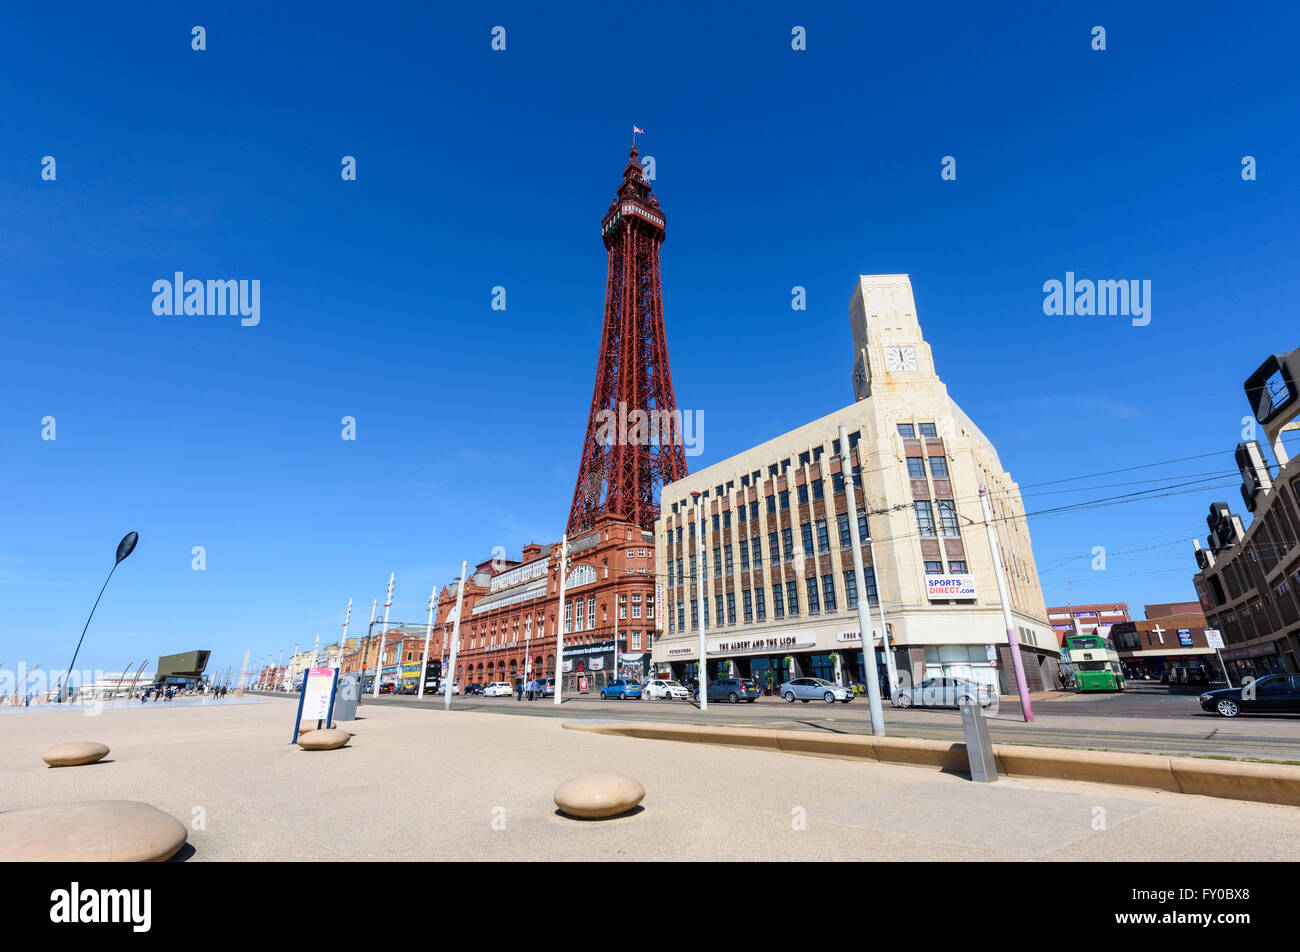 Sous un ciel bleu, une vue sur la célèbre tour de Blackpool de Blackpool, lancashire comme vu de la promenade Banque D'Images